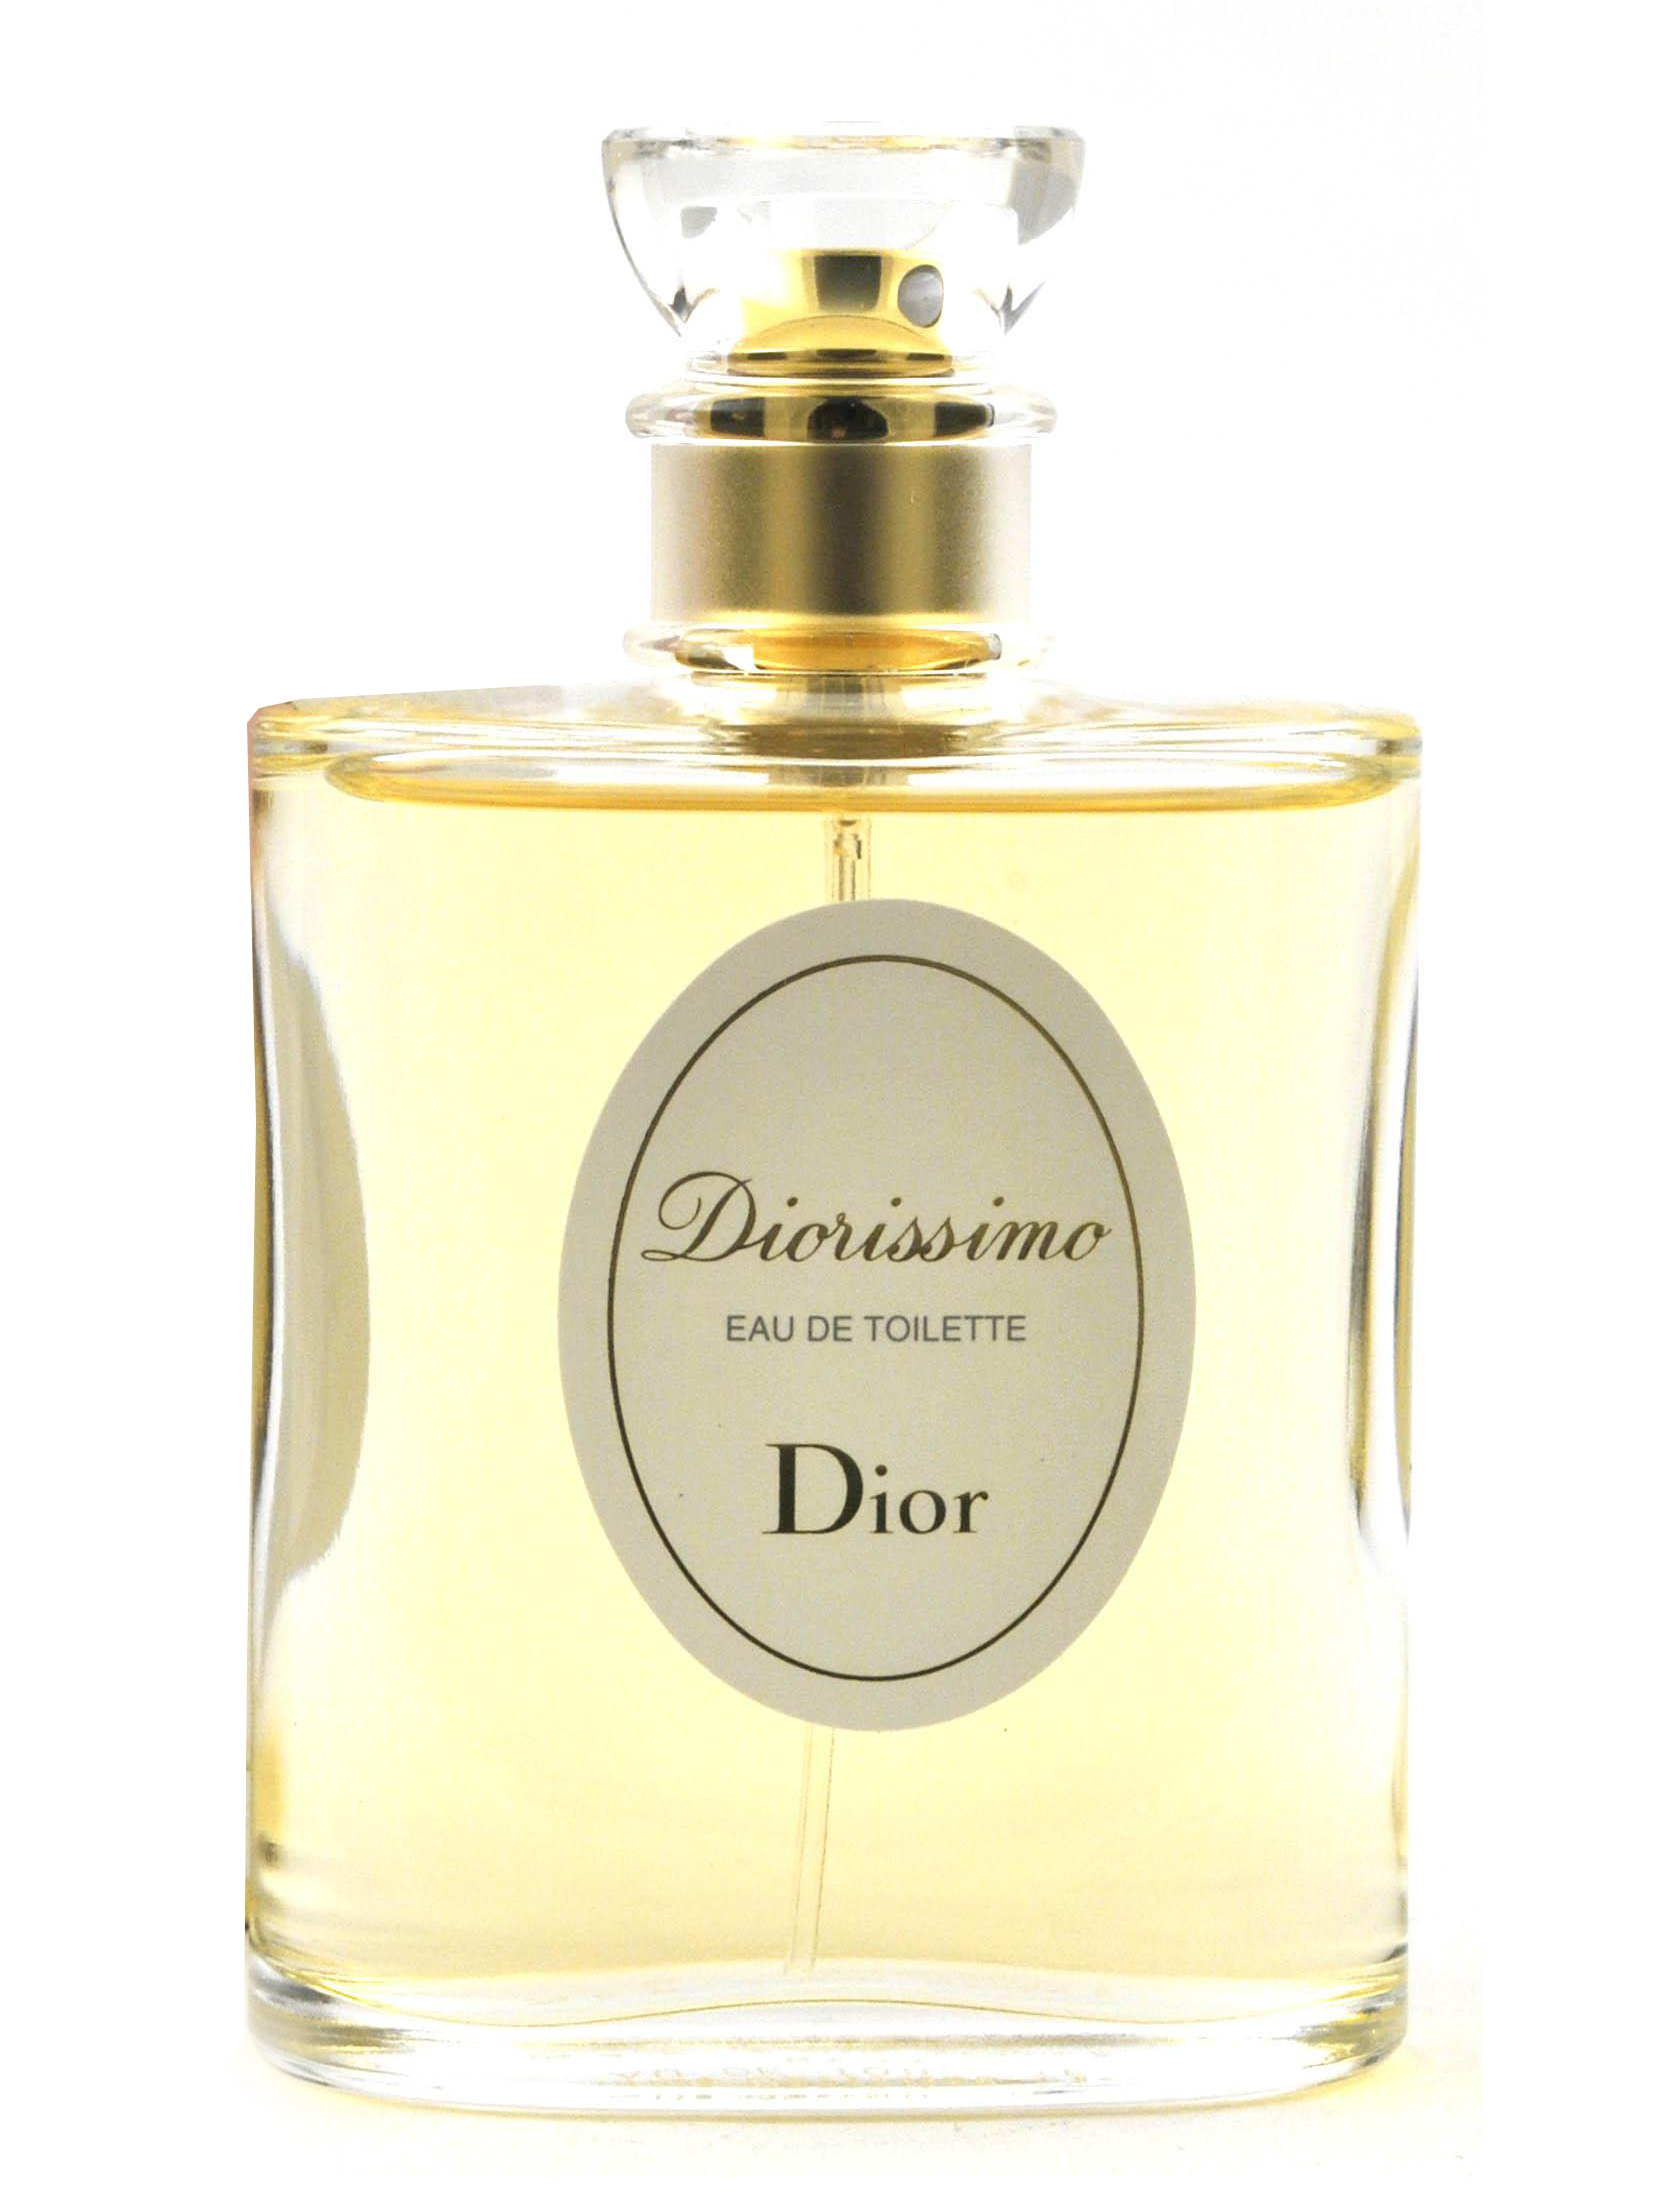 Parfum Christian Dior - Homecare24